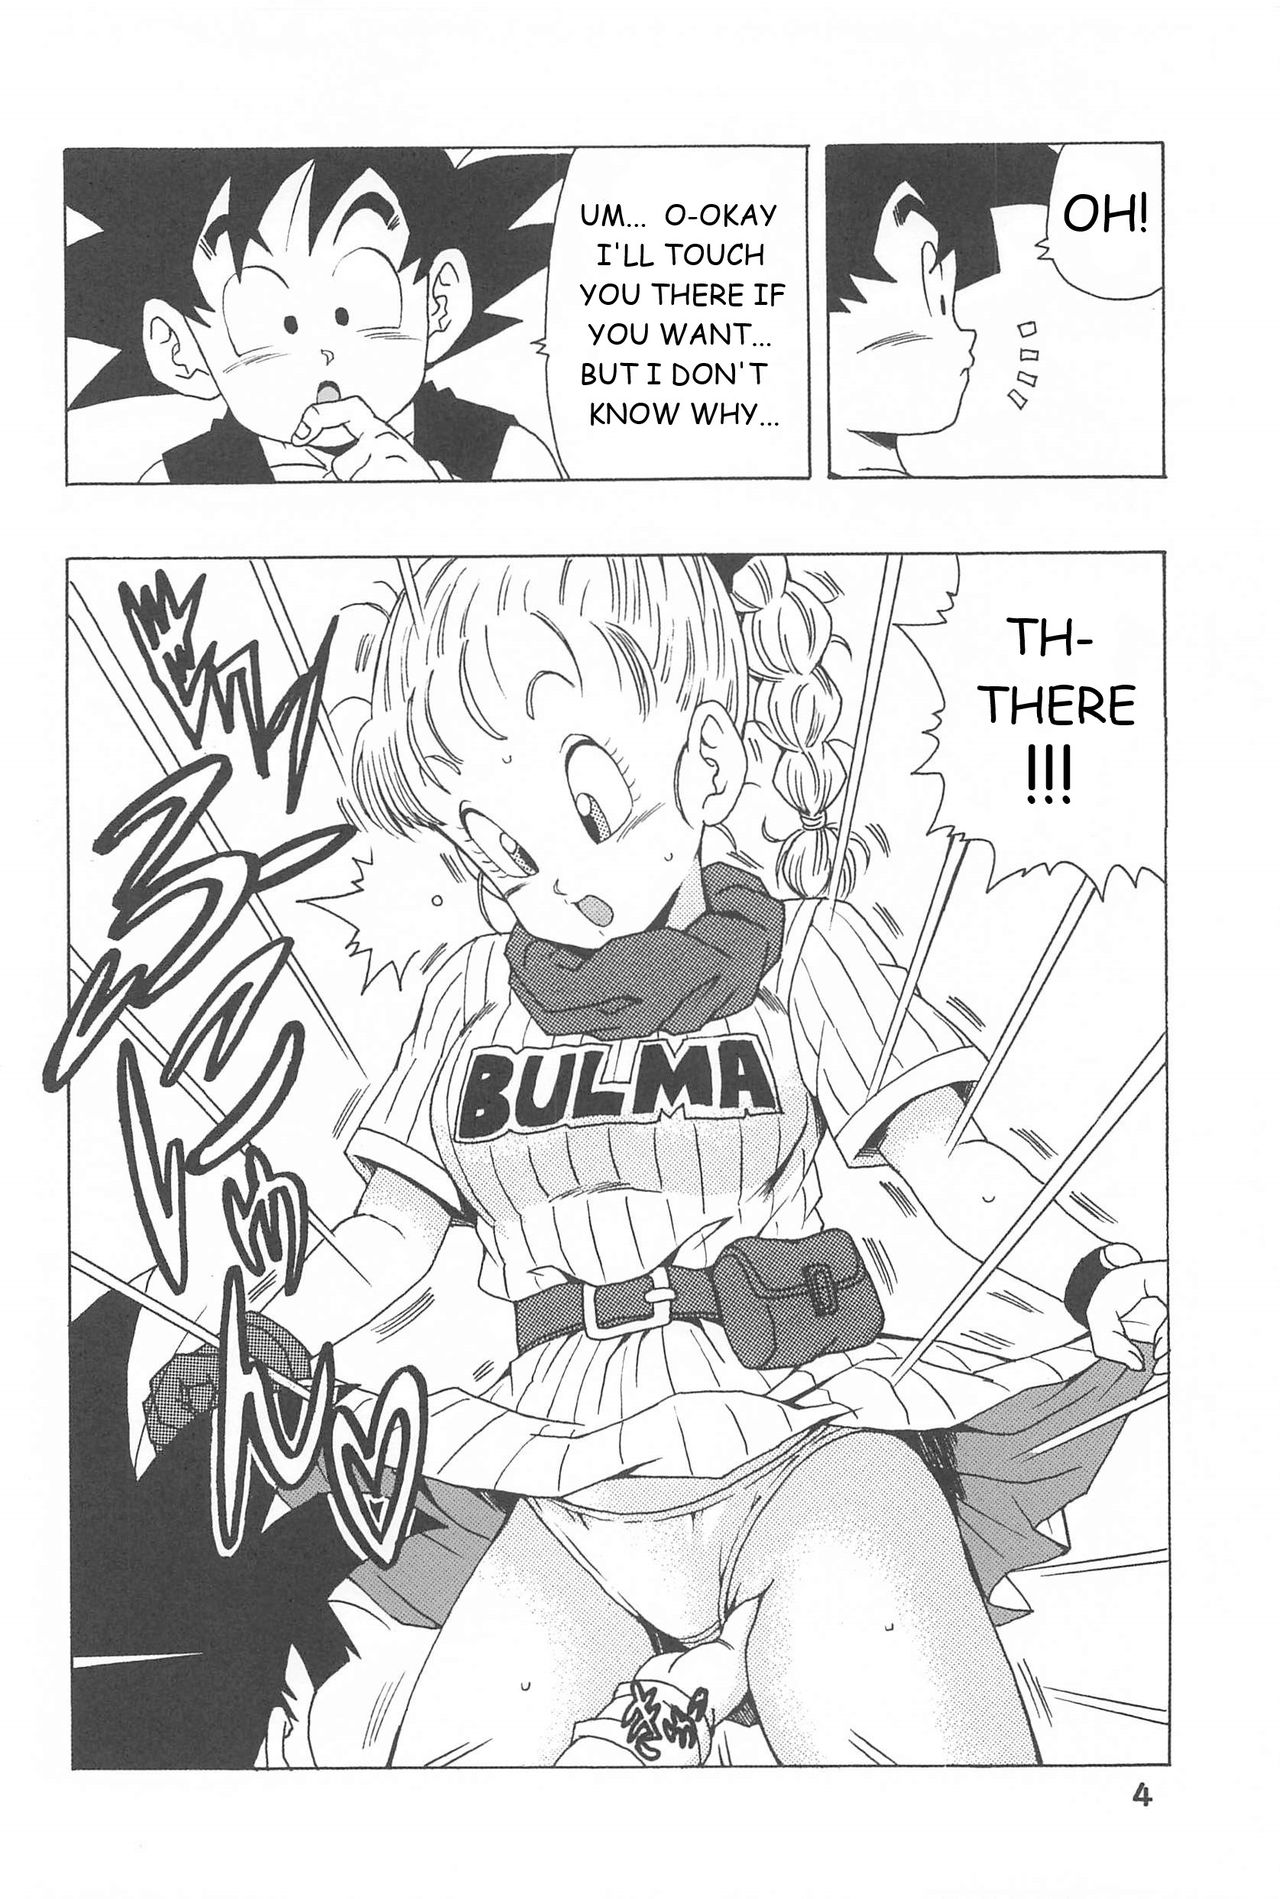 Bulma No Saikyou E No Michi Dragon Ball 04